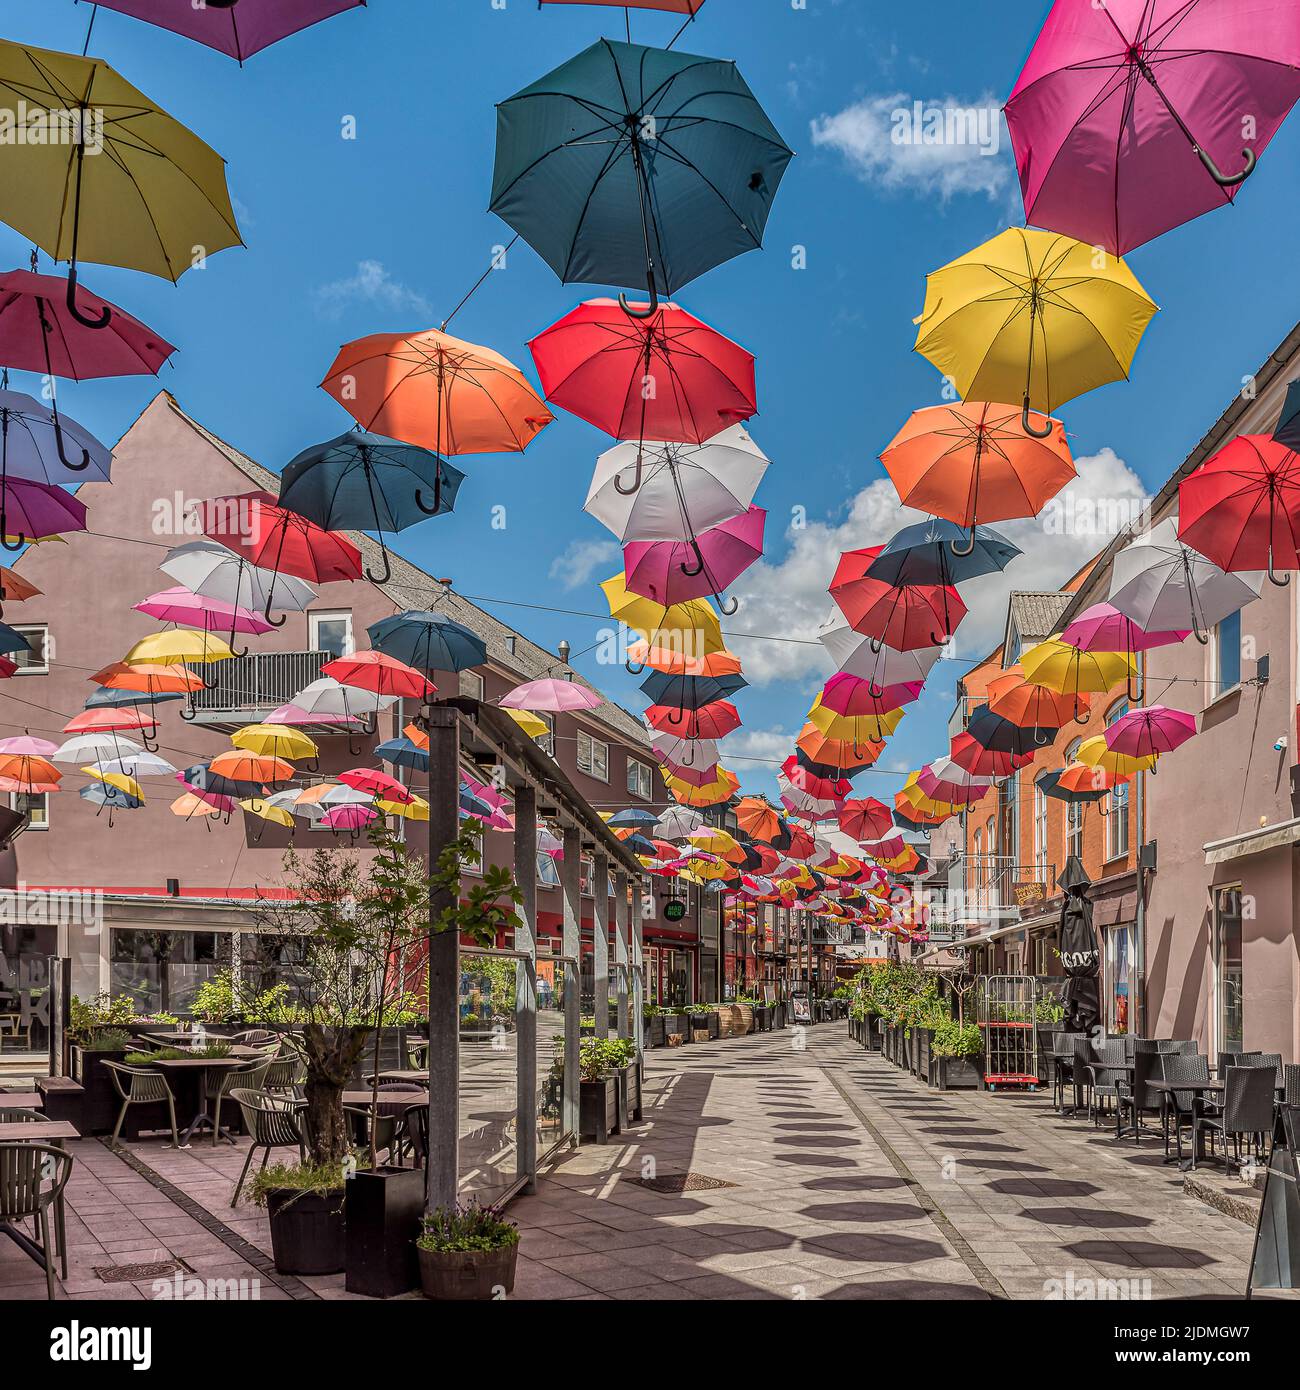 Offene Regenschirme hängen über der Fußgängerzone von Trondheim, Norwegen  Stockfotografie - Alamy